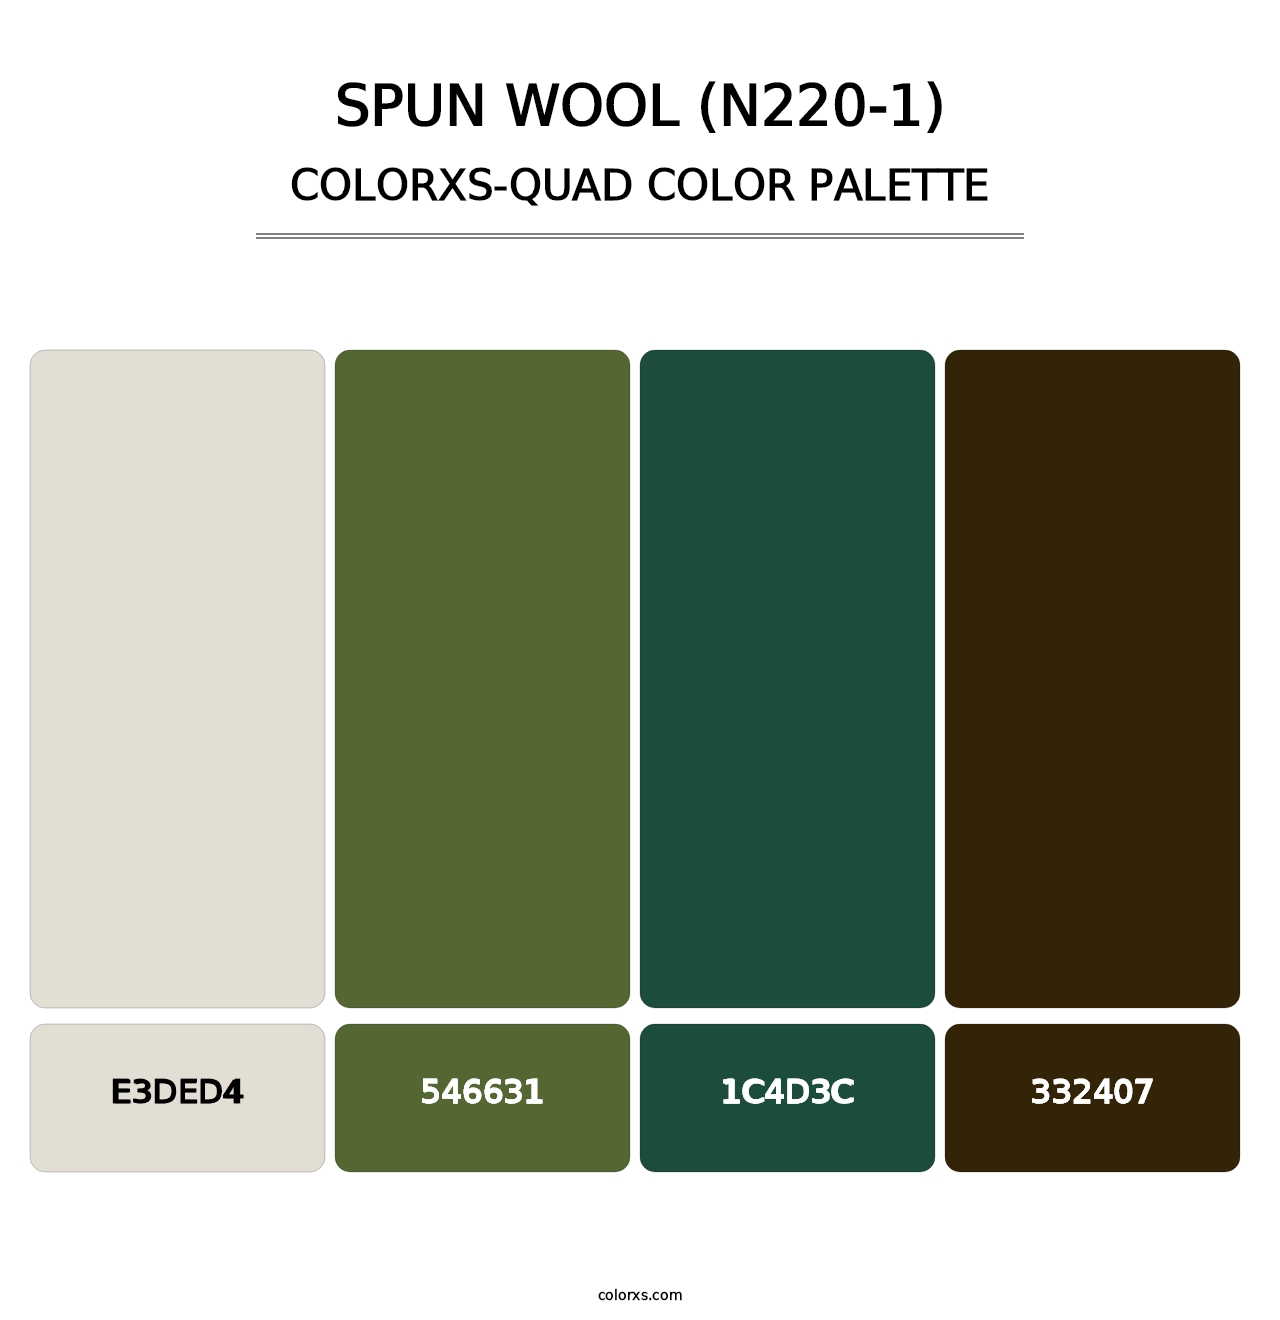 Spun Wool (N220-1) - Colorxs Quad Palette